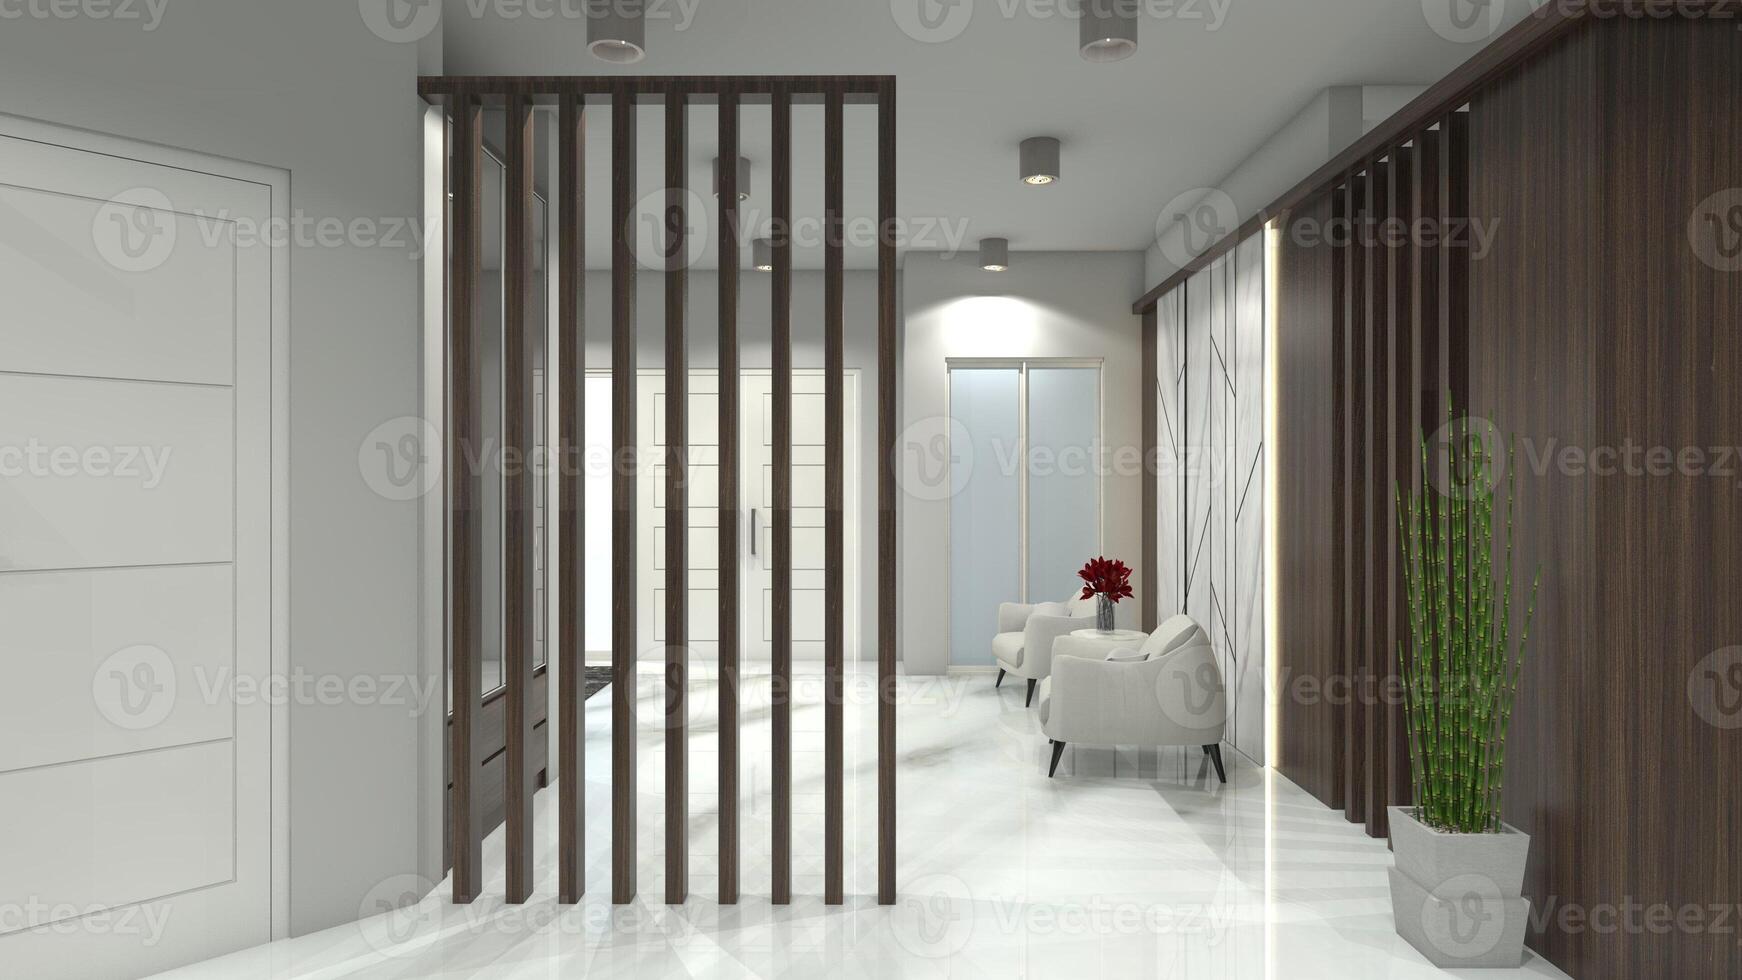 minimalistische houten partitie en paneel ontwerp voor leven kamer interieur, 3d illustratie foto